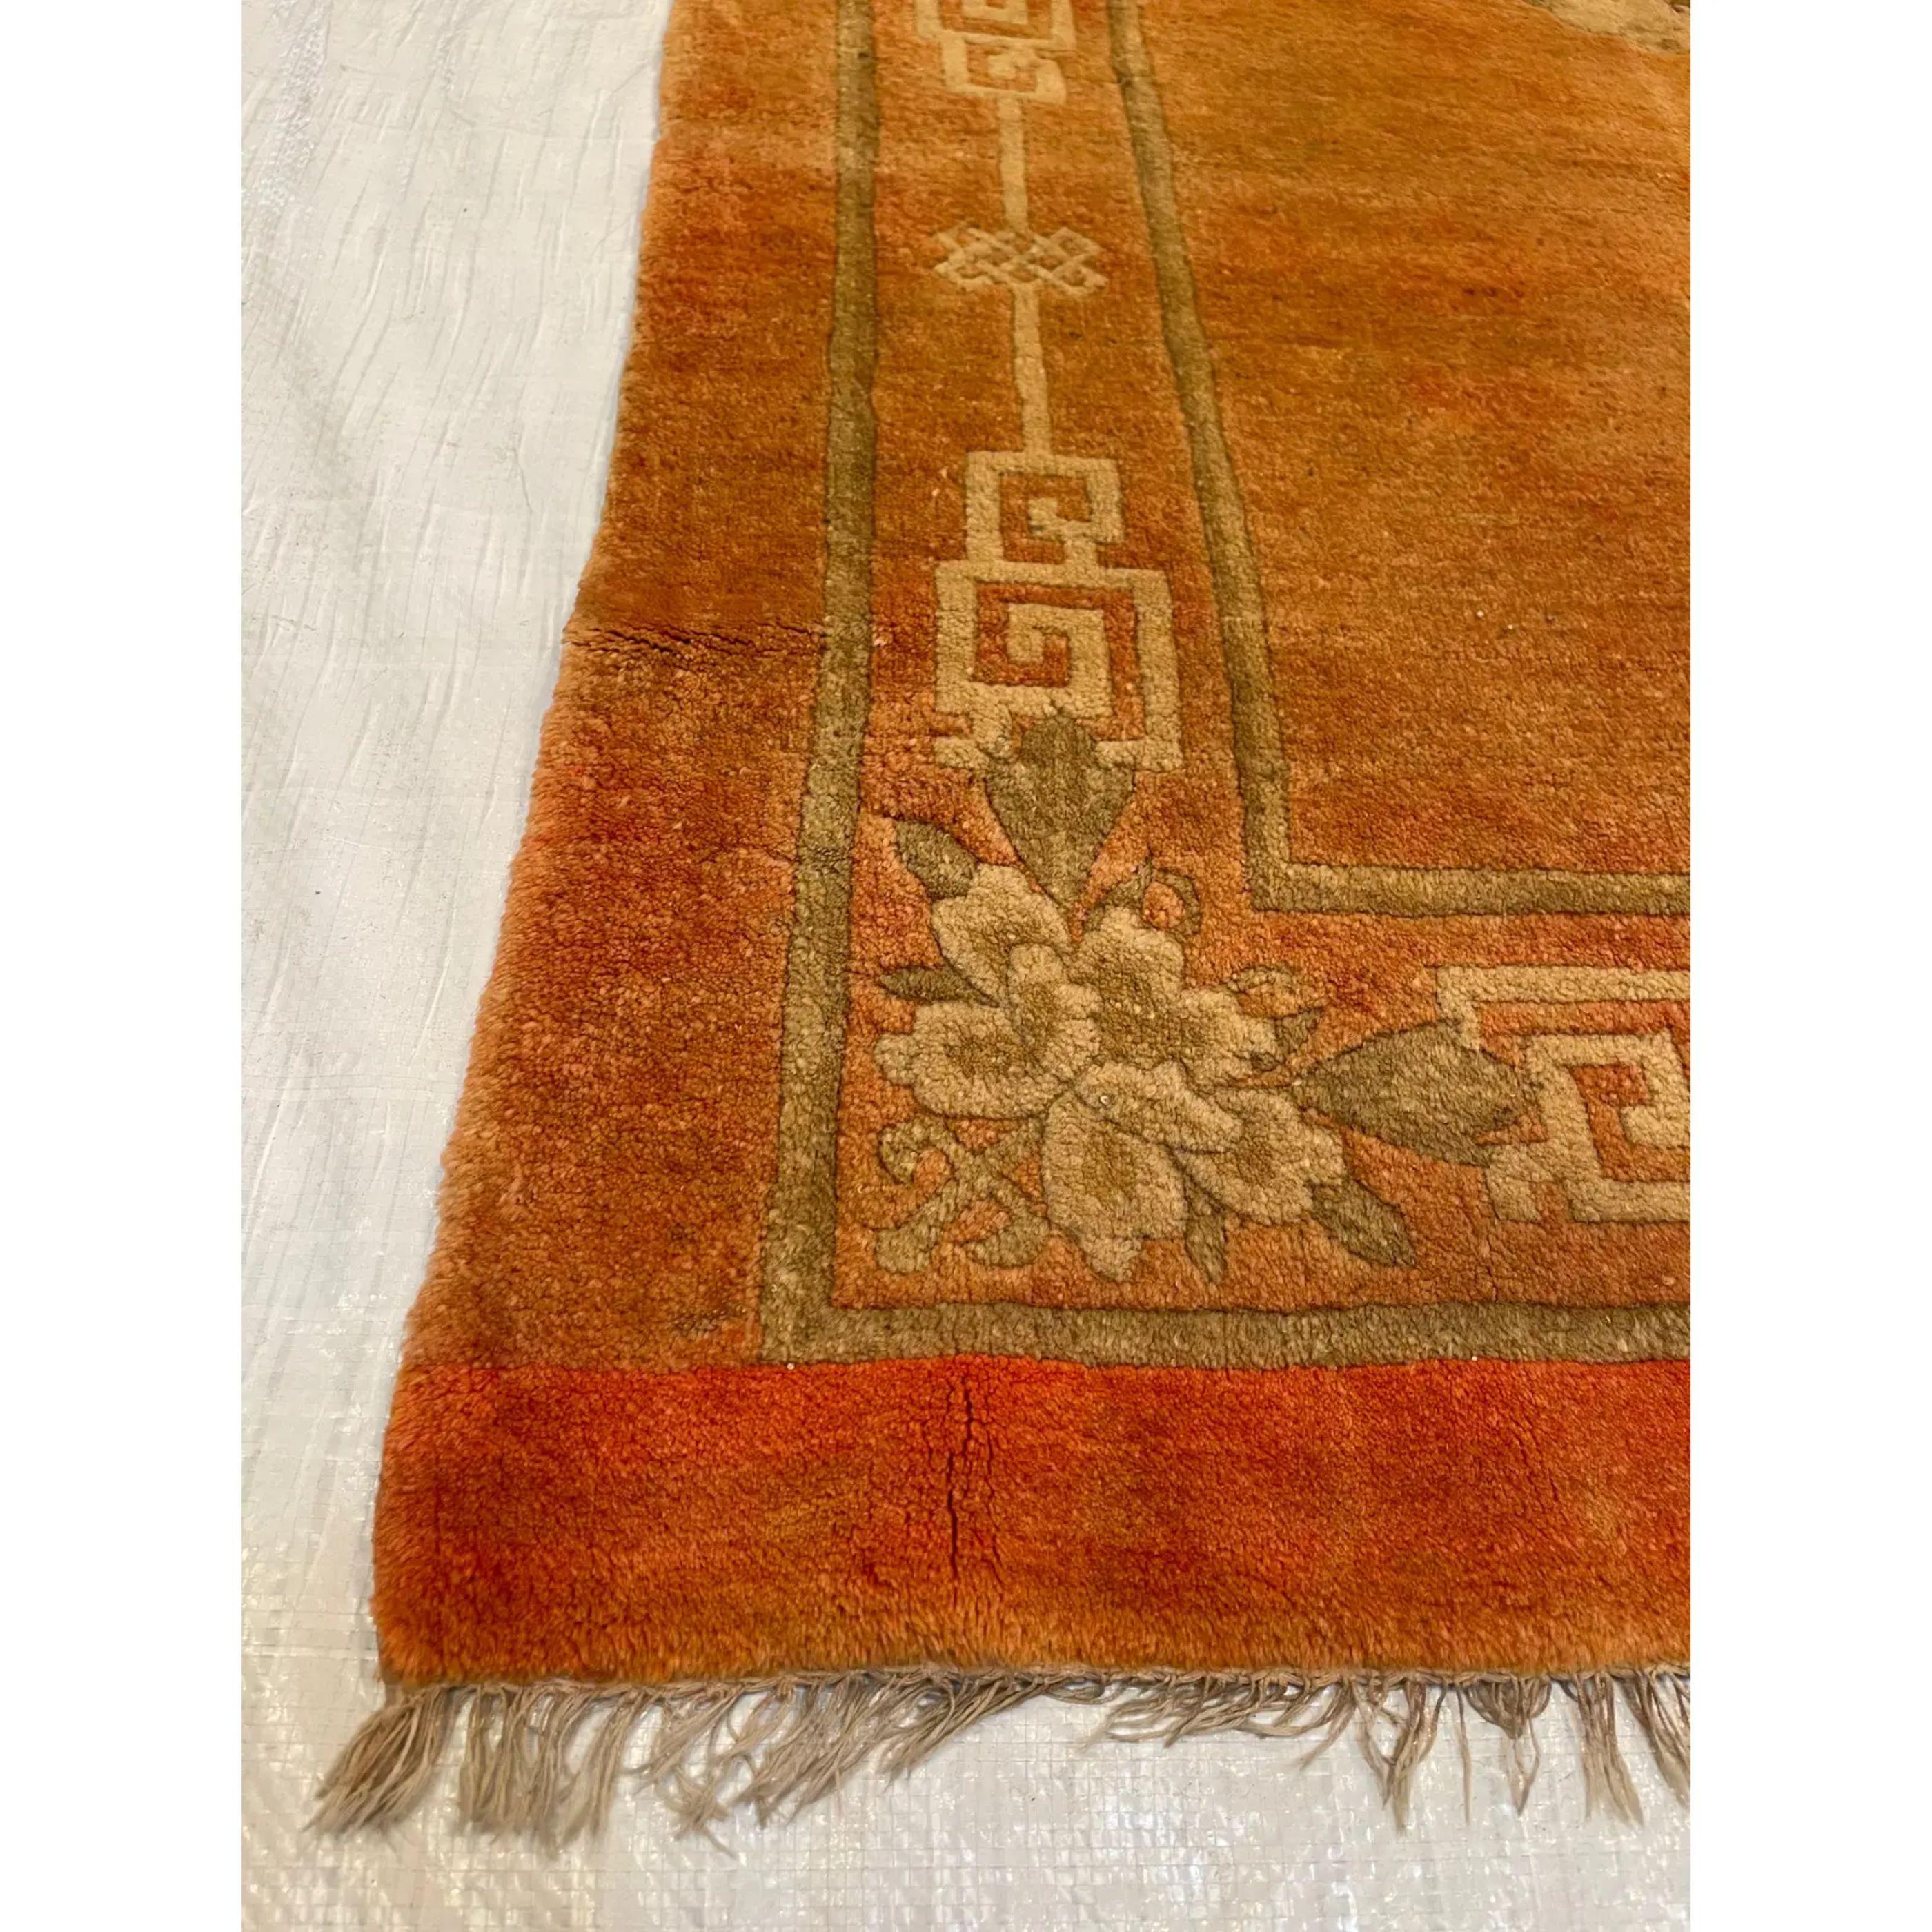 Les tapis chinois anciens, contrairement à la plupart des productions de tapis anciens, étaient tissés presque exclusivement pour la consommation intérieure. Comme ils étaient pour la plupart à l'abri des influences européennes et occidentales, cela